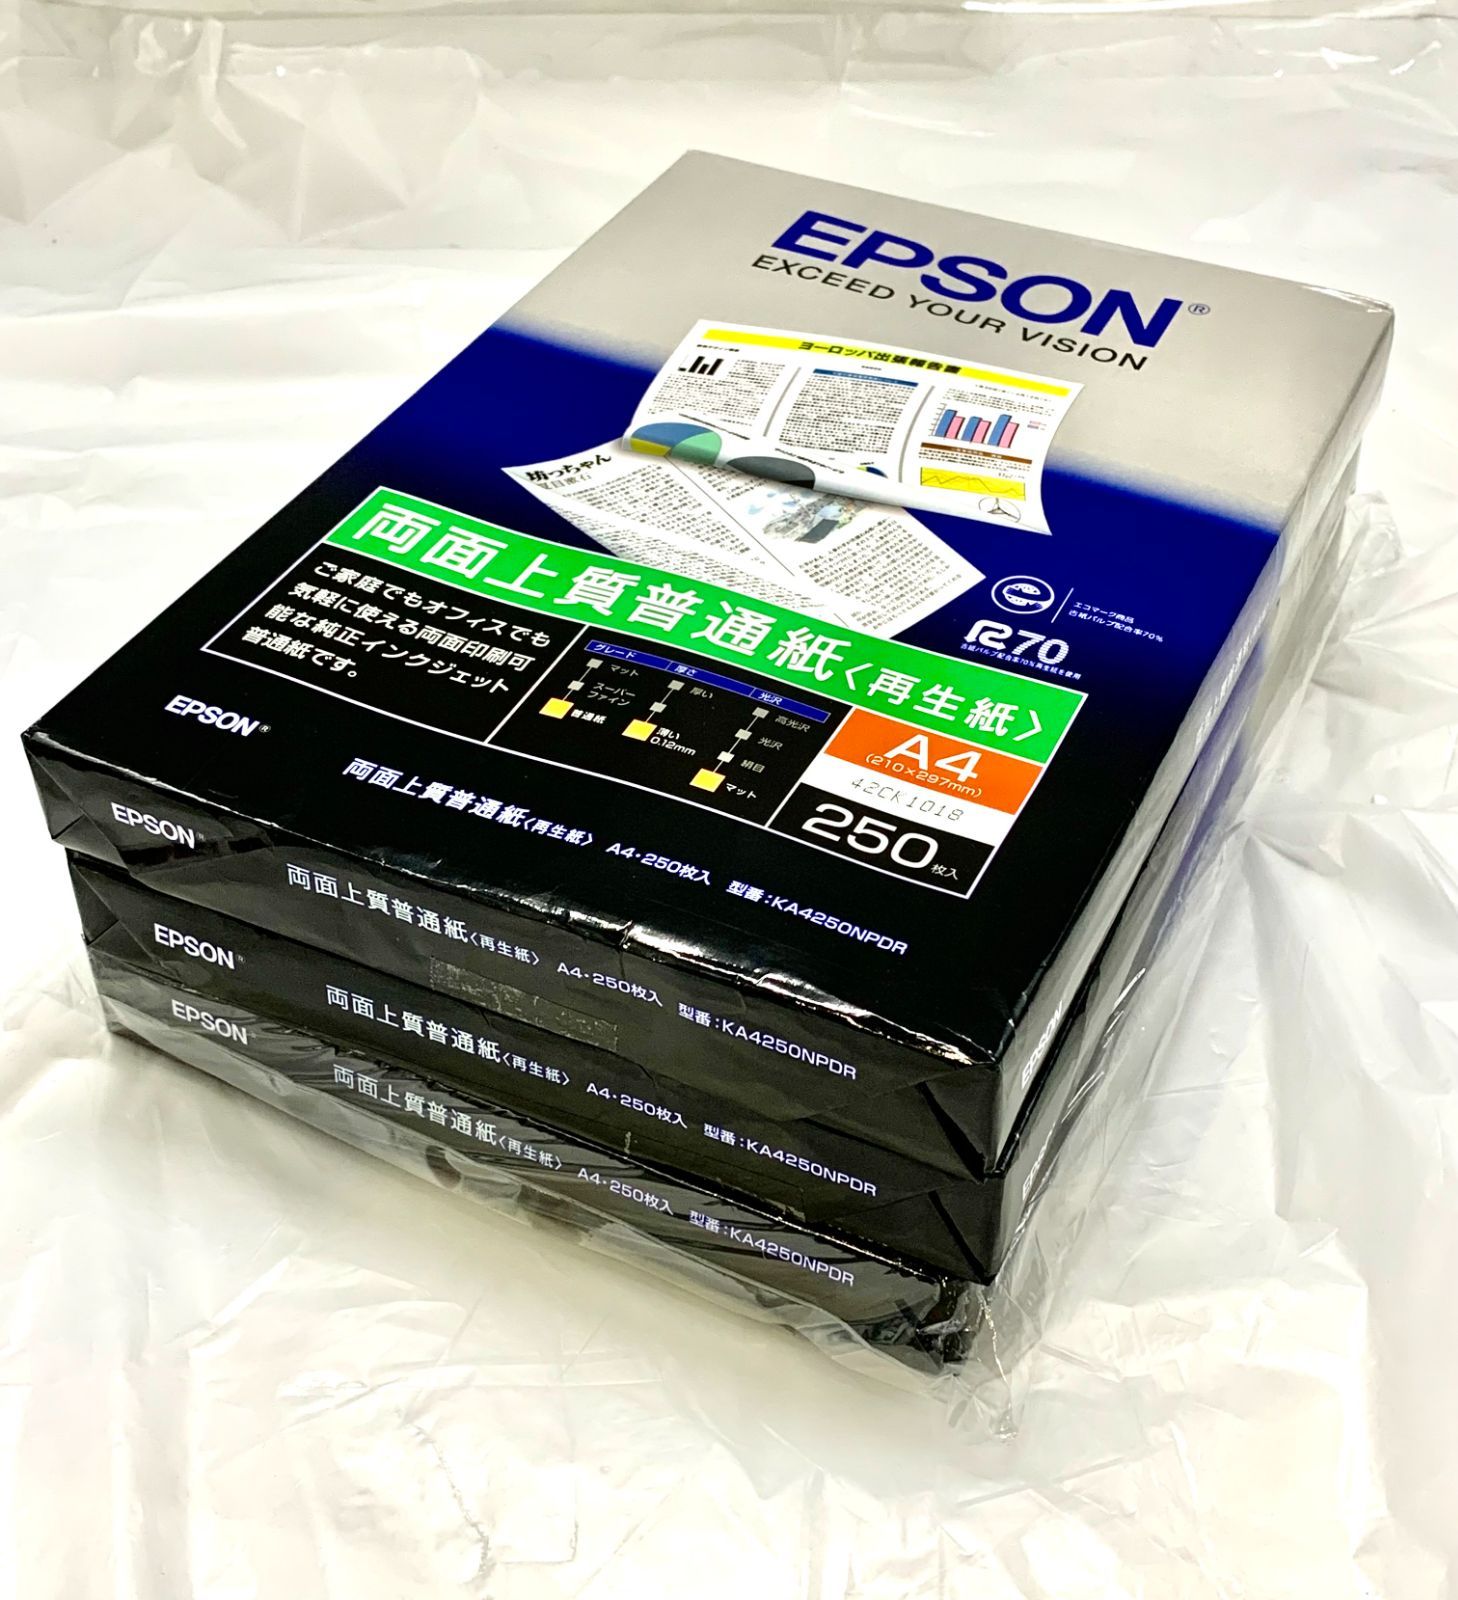 エプソン 両面上質普通紙 再生紙 A4 250枚 KA4250NPDR 両面印刷